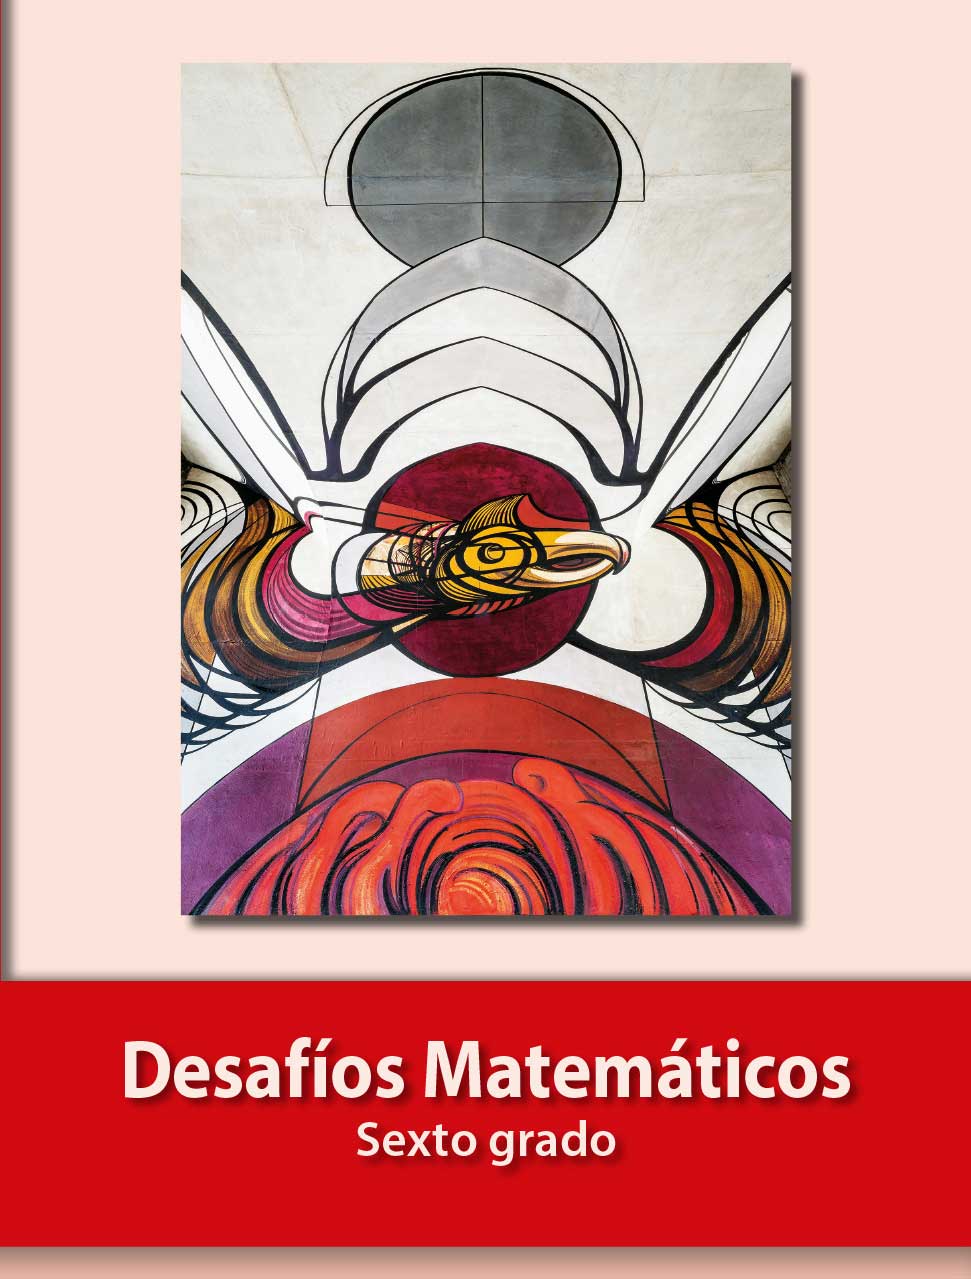 Desafios Matematicos Libro Para El Alumno Libro De Primaria Grado 6 Comision Nacional De Libros De Texto Gratuitos